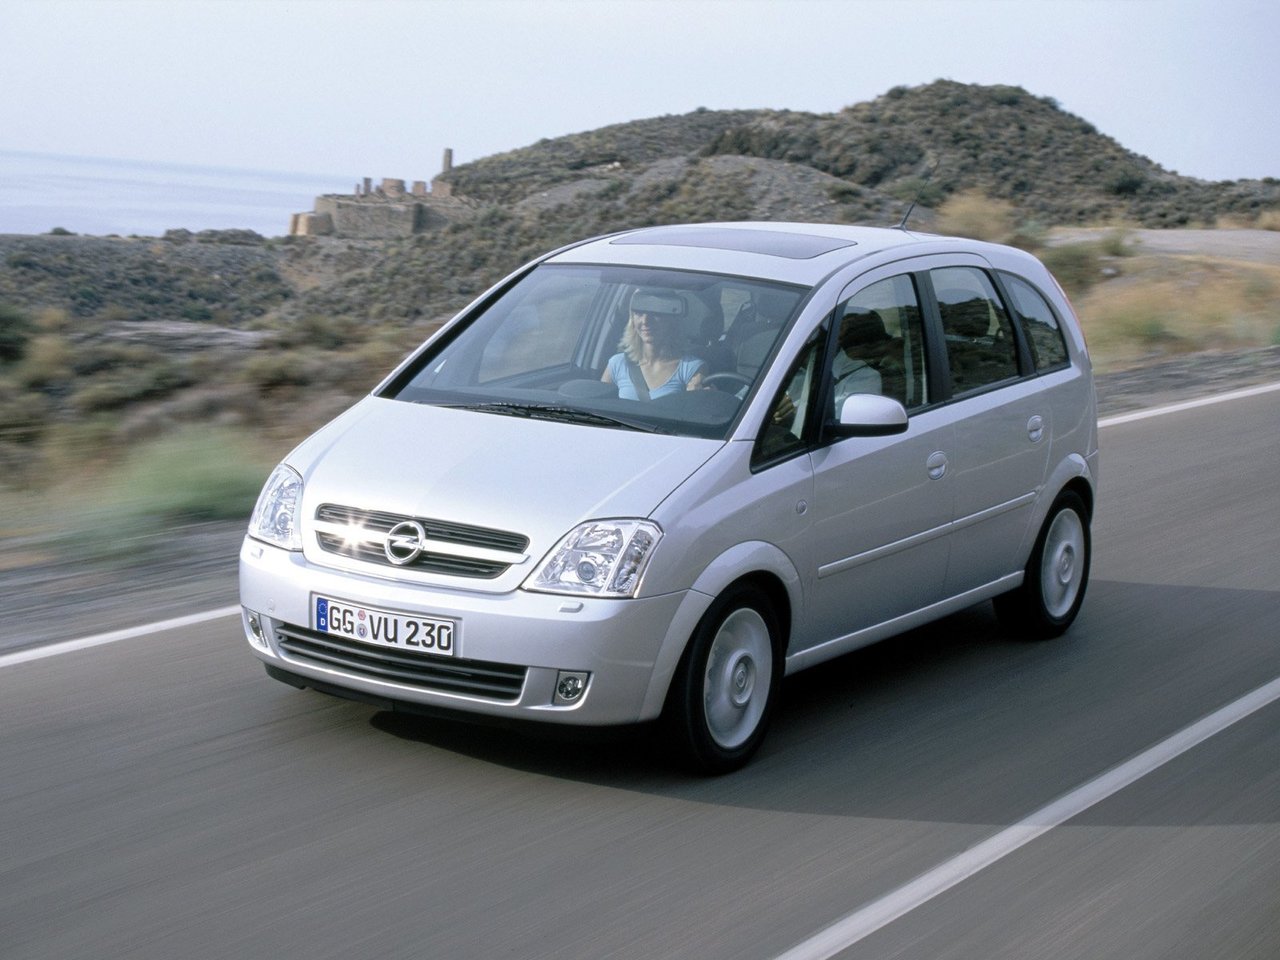 Снижаем расход Opel Meriva на топливо, устанавливаем ГБО